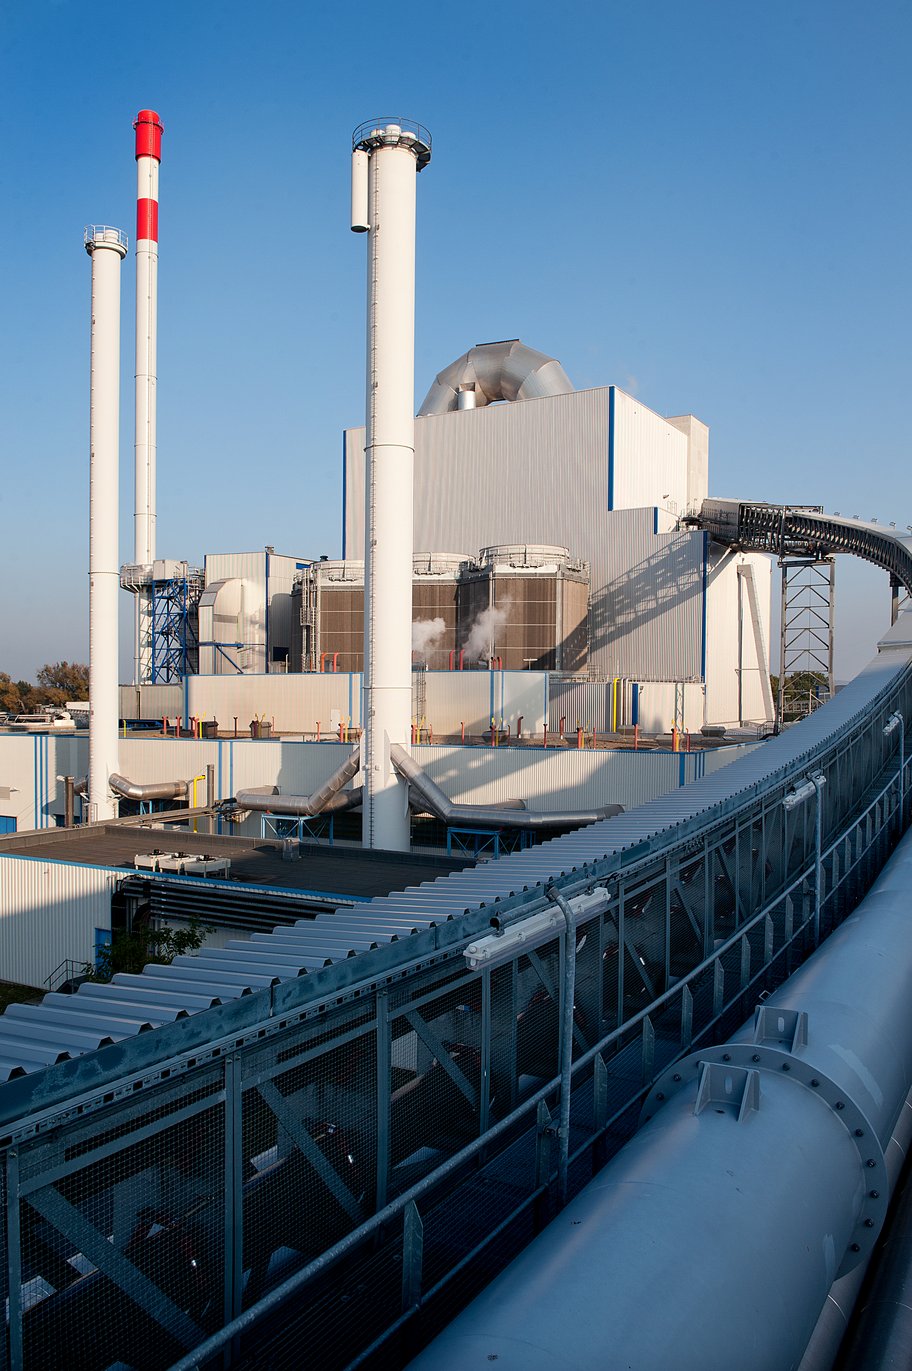 EEW location Schwedt refuse-derived fuel power plant/waste incineration